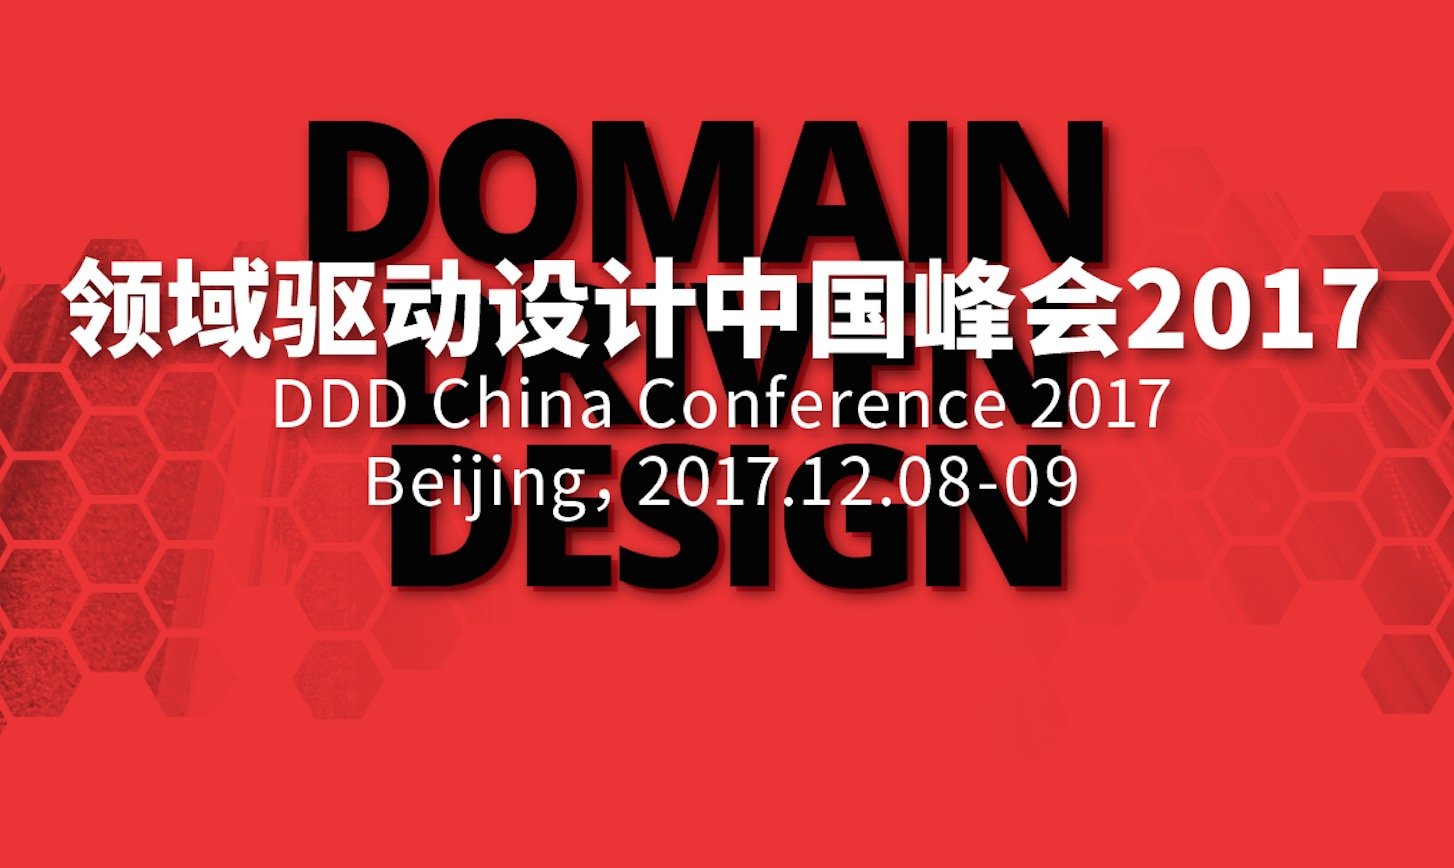 领域驱动设计中国峰会 2017